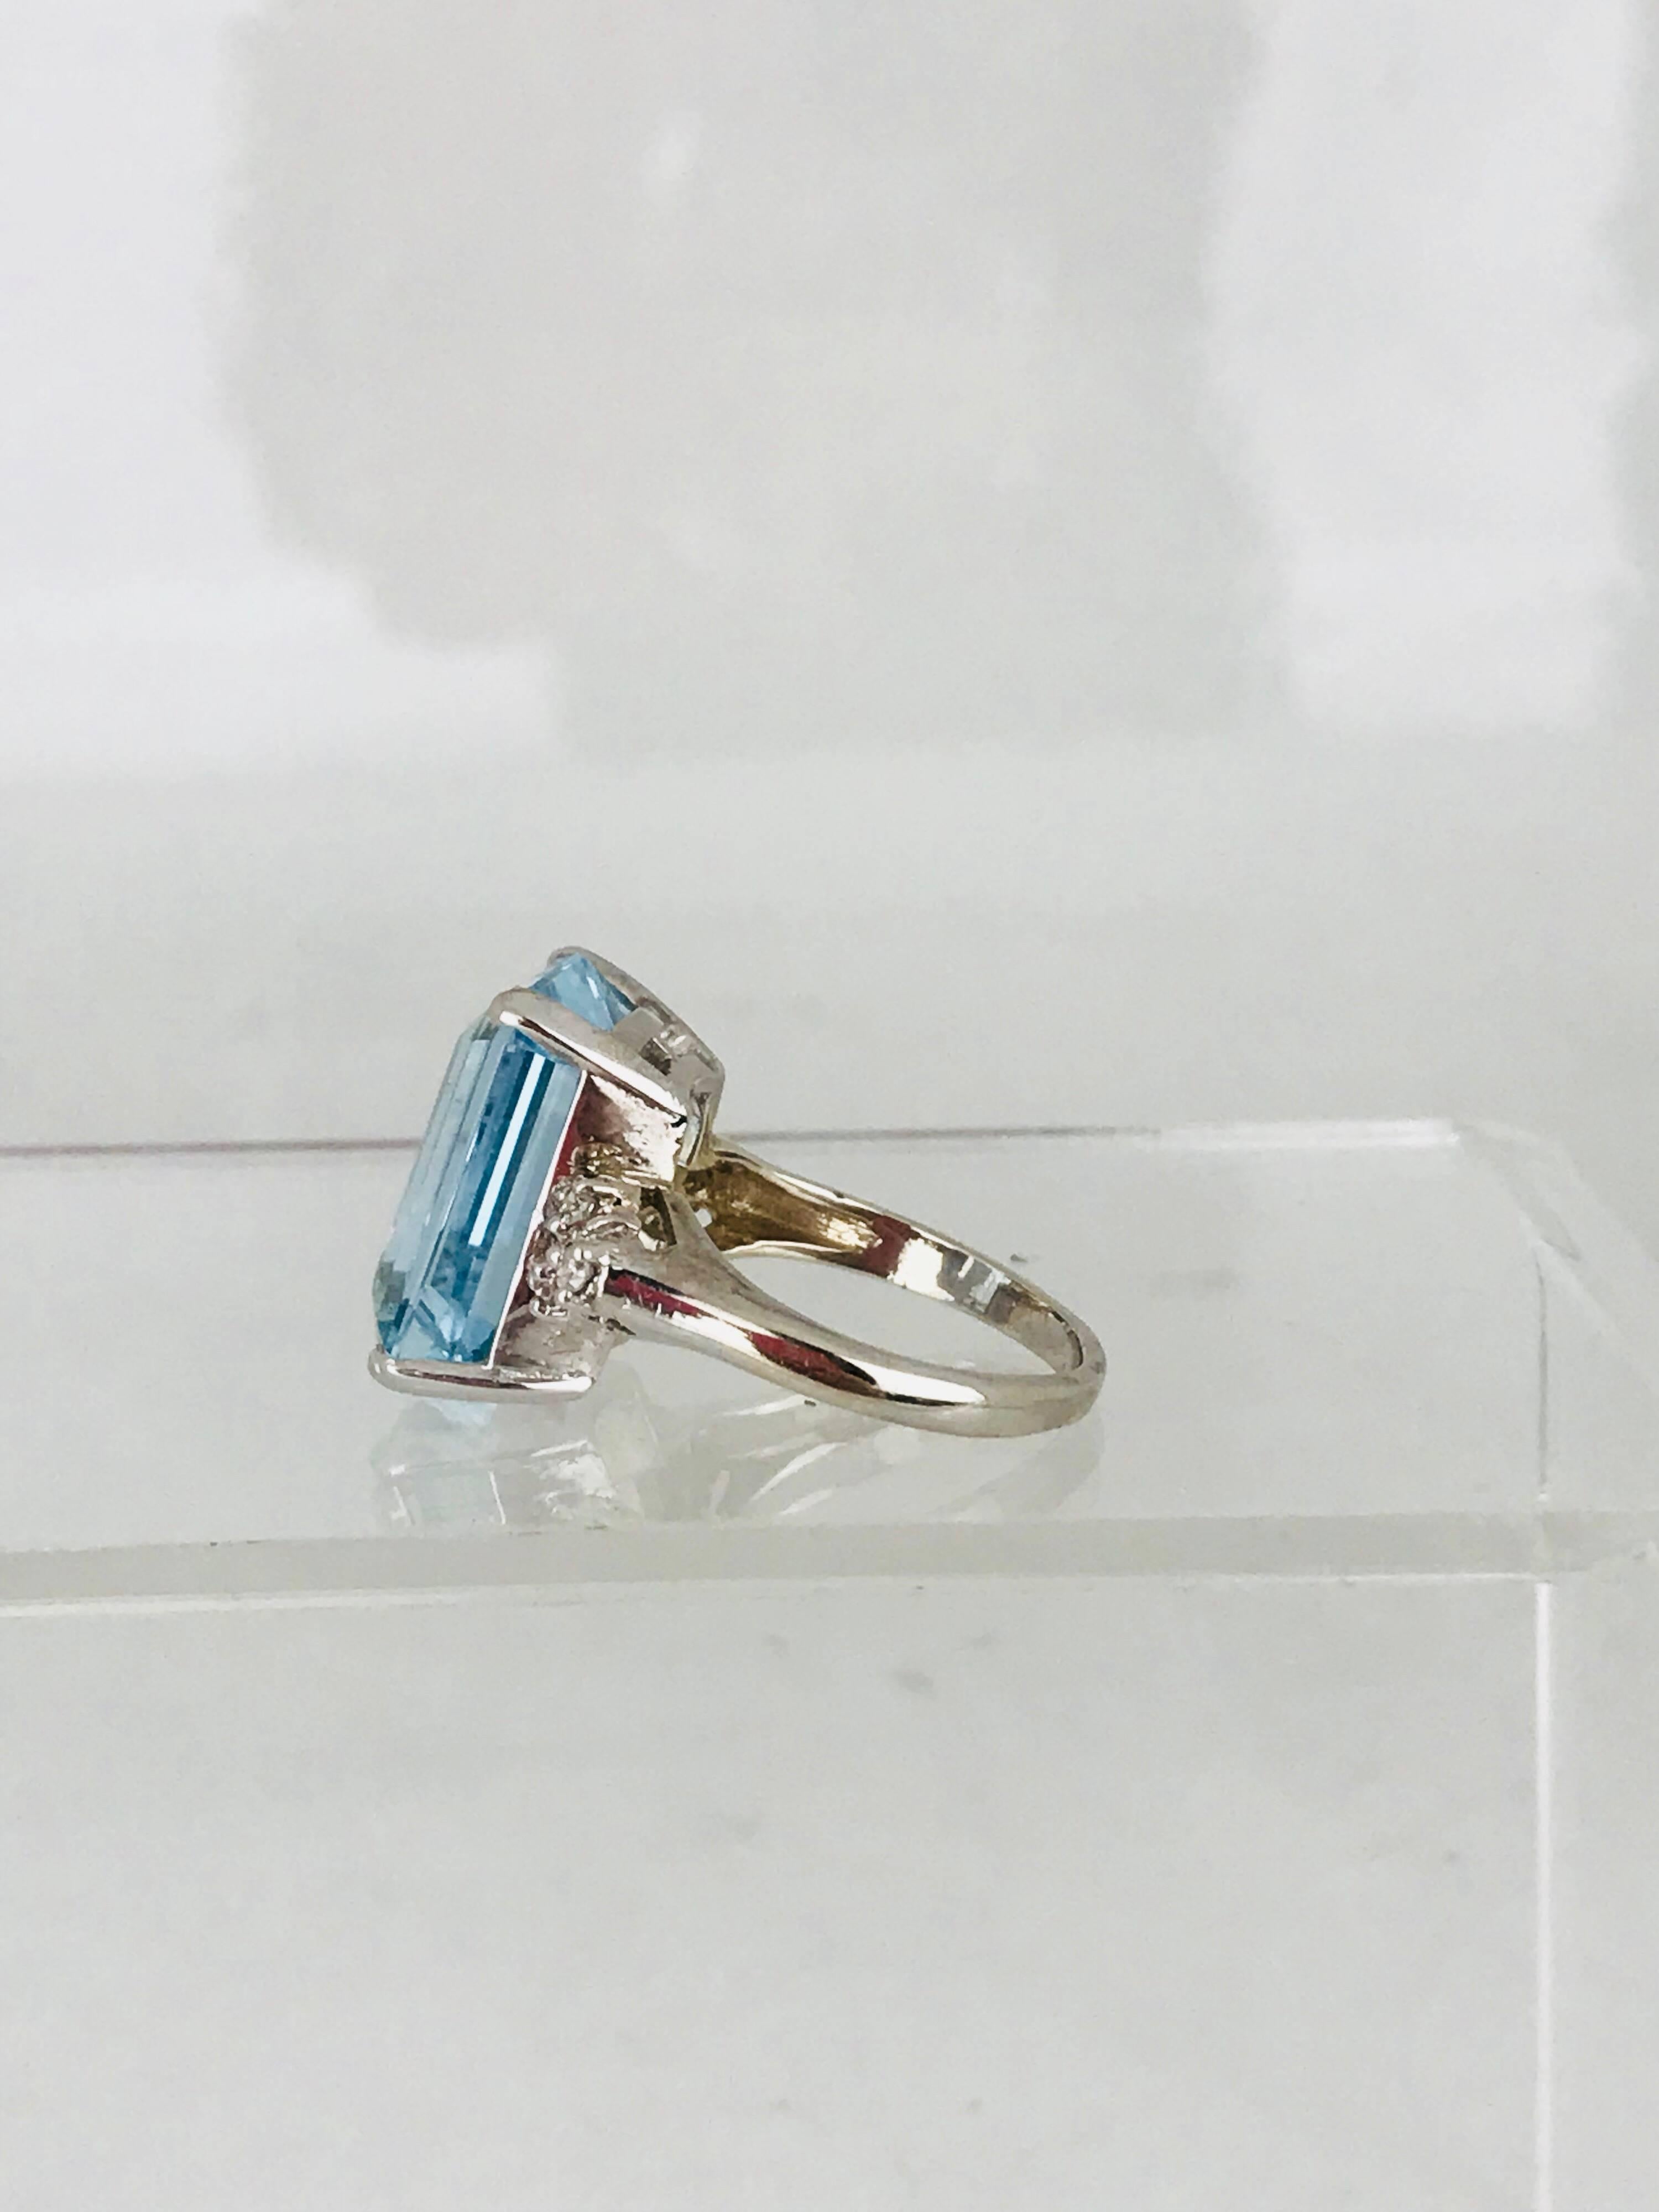 Aquamarine 13.00 Carat Emerald Cut Ring with Diamonds, Retro, circa 1965 For Sale 4